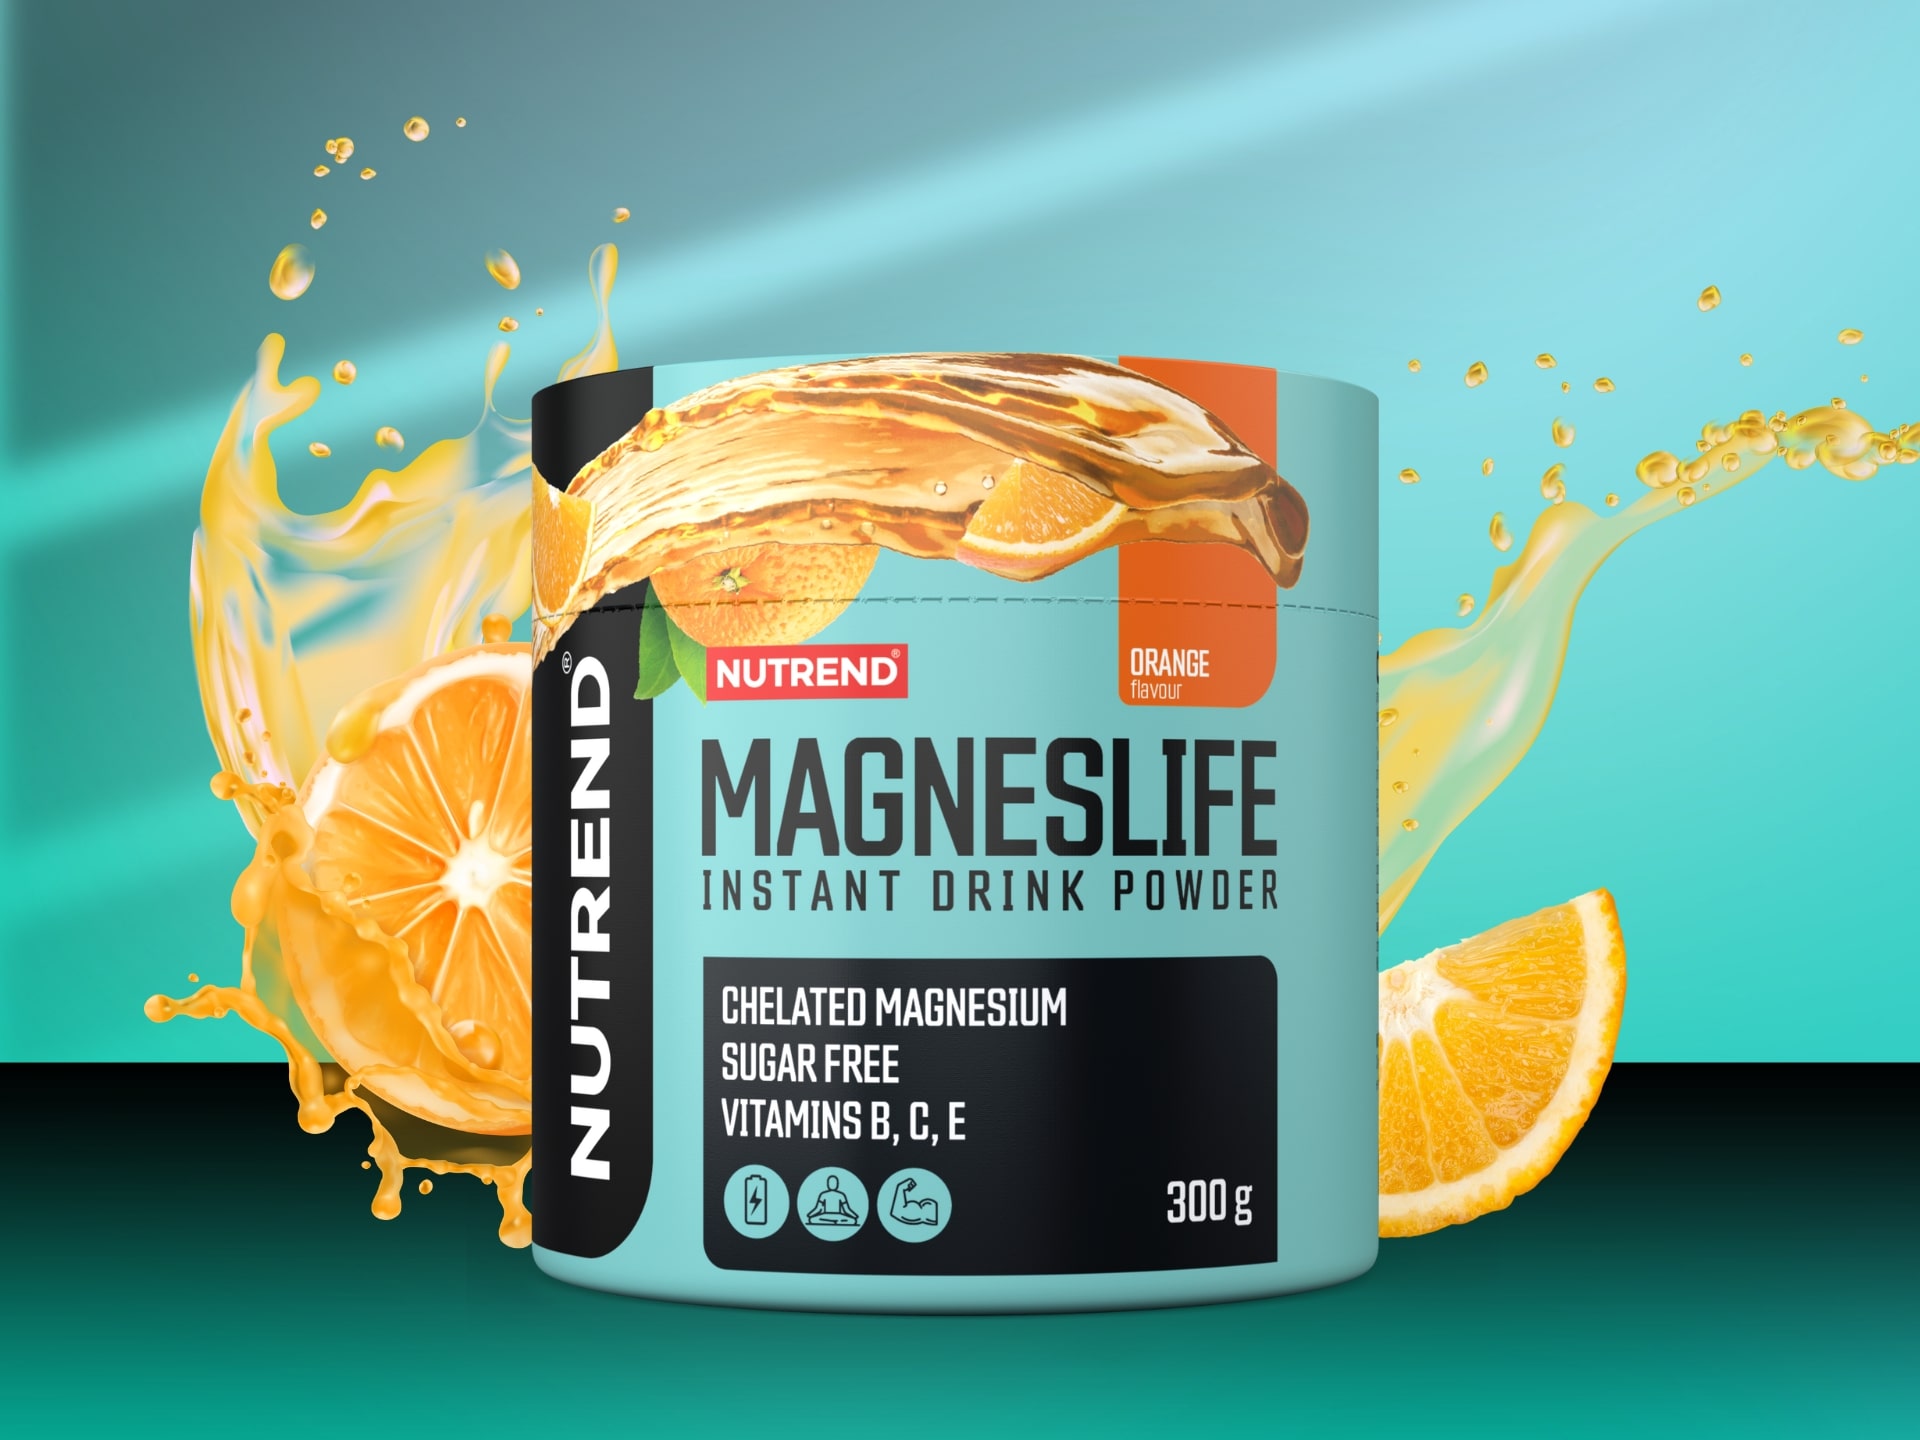 Nutrend Magneslife Instante drink powder 300g